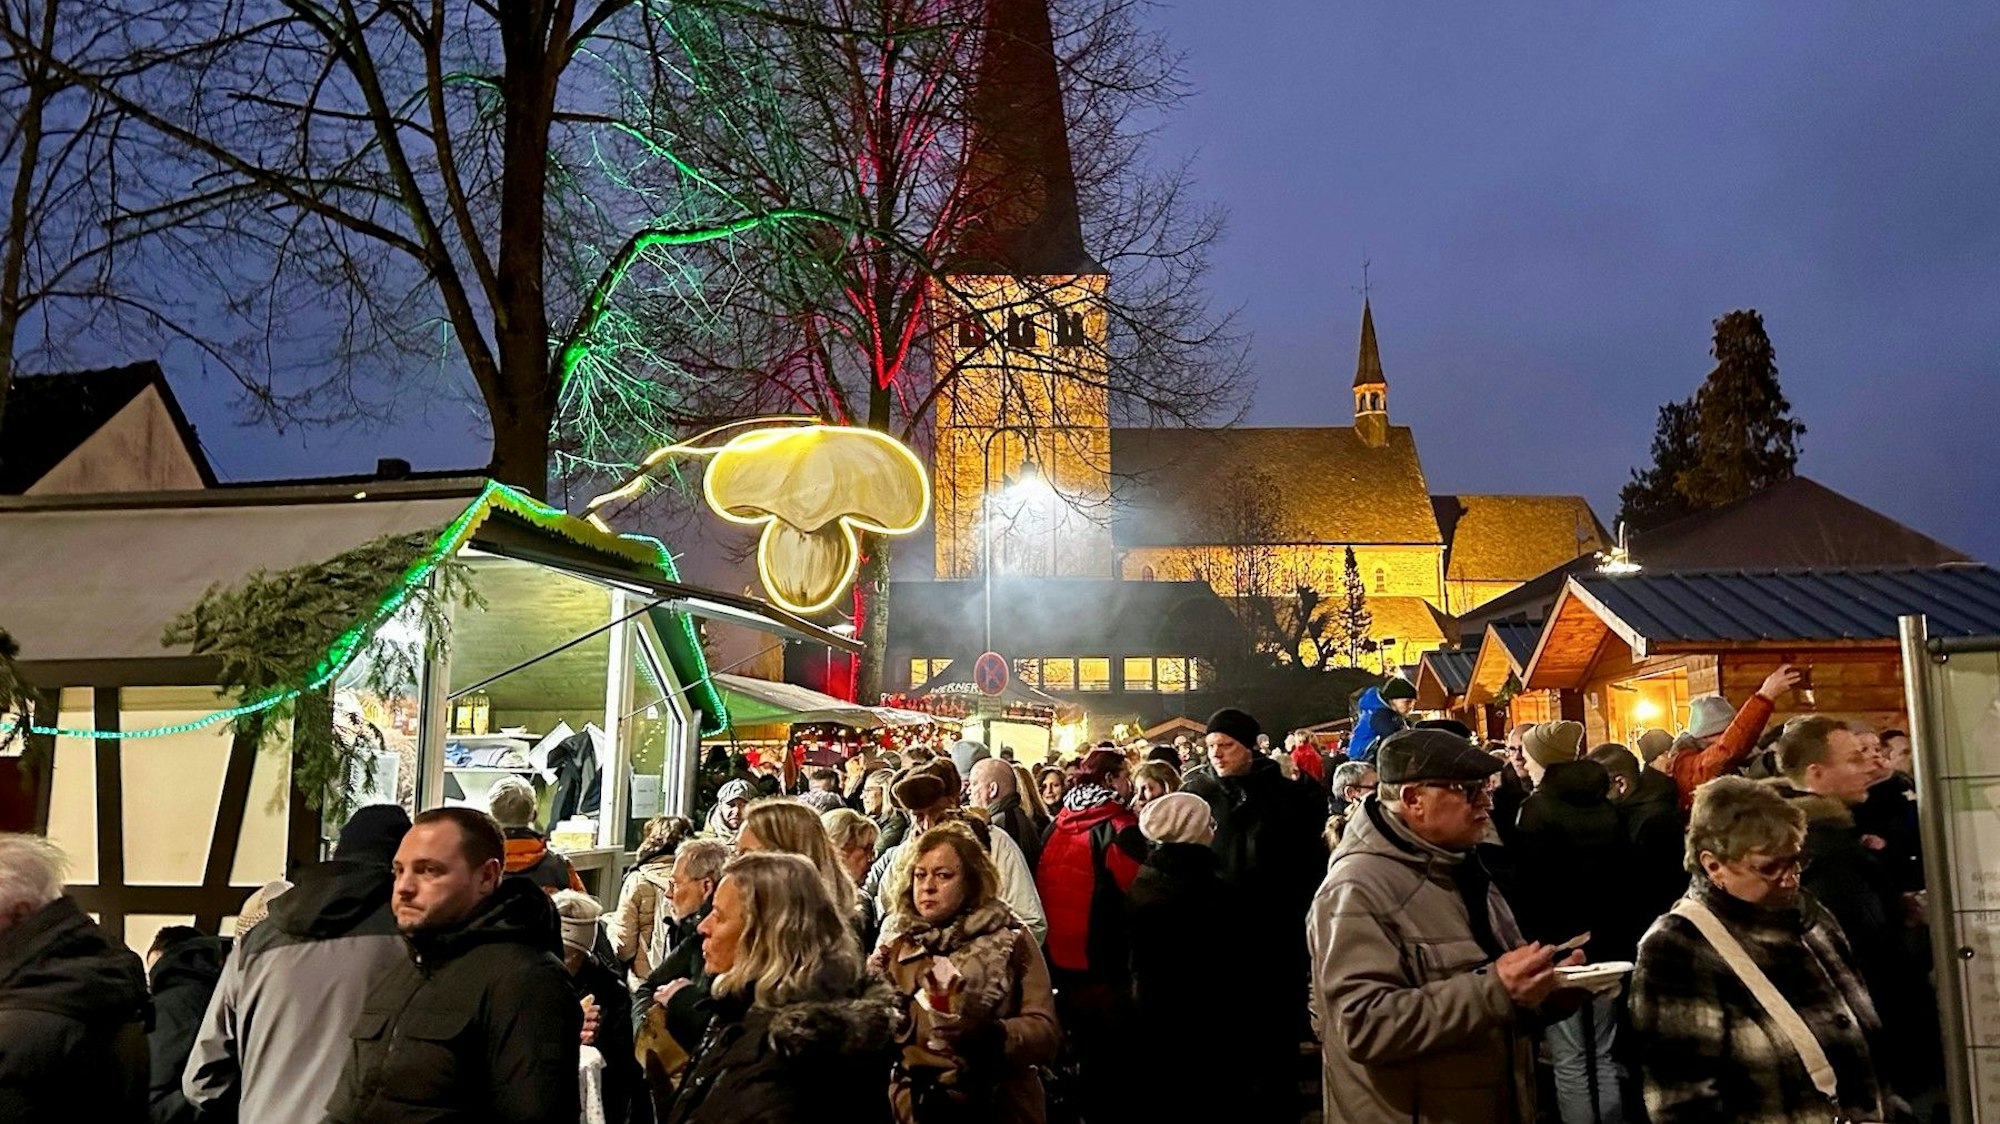 Ein Weihnachtsmarkt in der Dämmerung. Viele Menschen drängen sich in der Budengasse um beleuchtete Weihnachtshäuschen. Im Hintergrund steht eine beleuchtete Kirche.